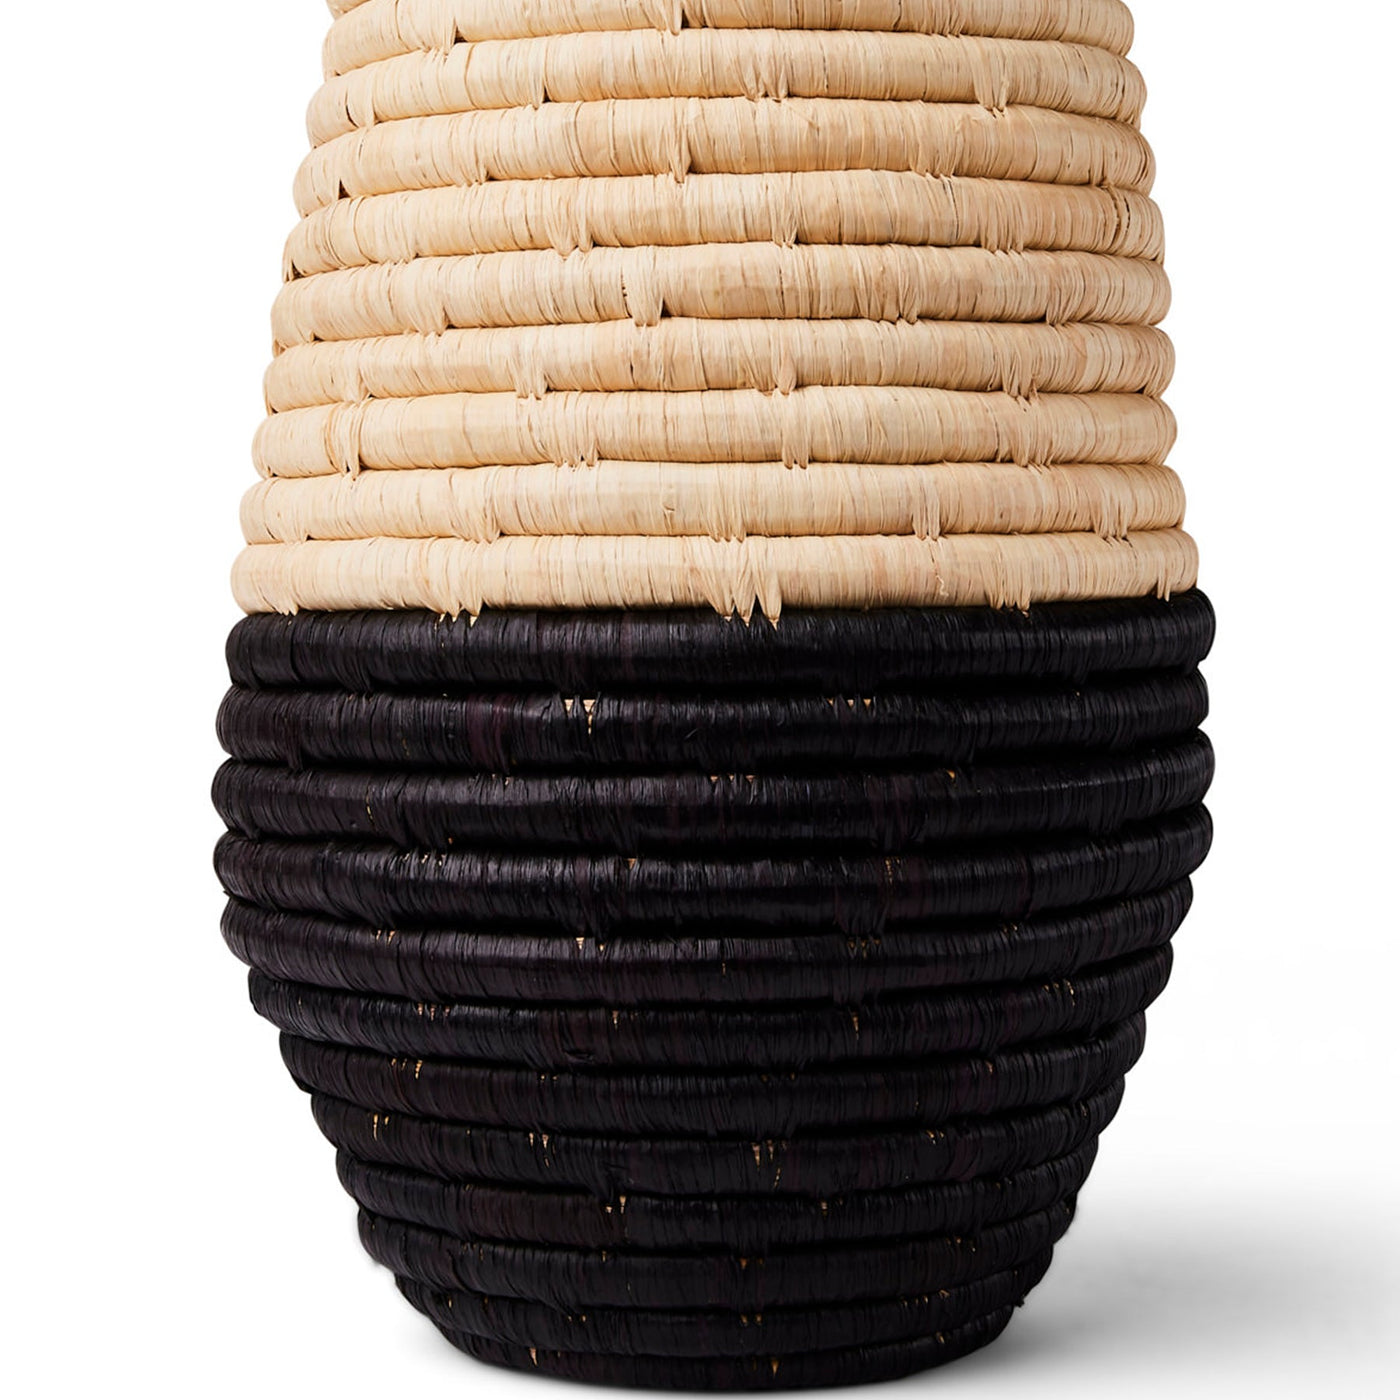 Modern Vessel - 12" Black & Natural Vase